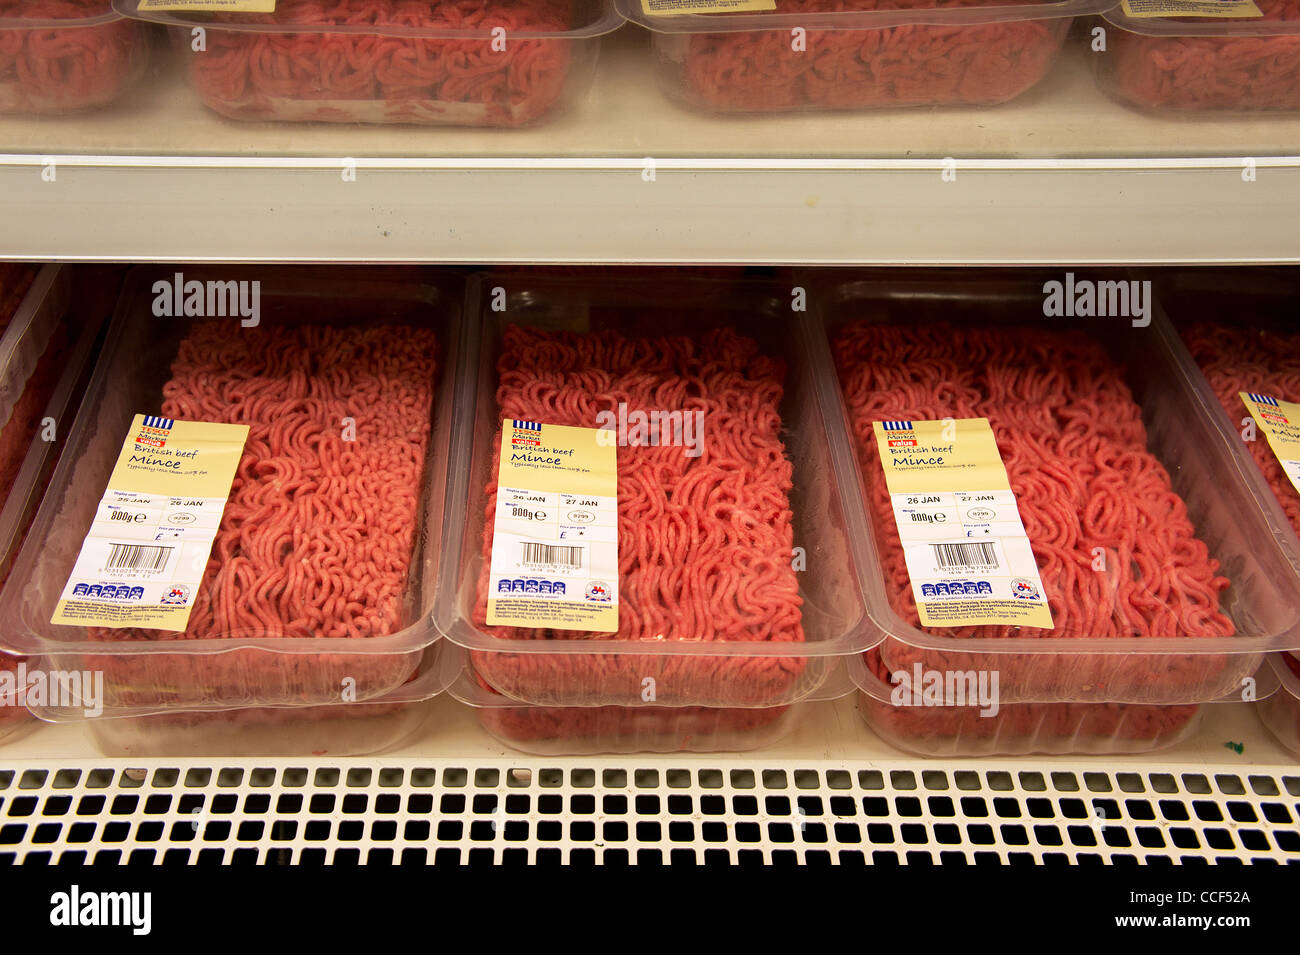 Empaquetado de carne cruda picada en un supermercado Tesco UK Foto de stock